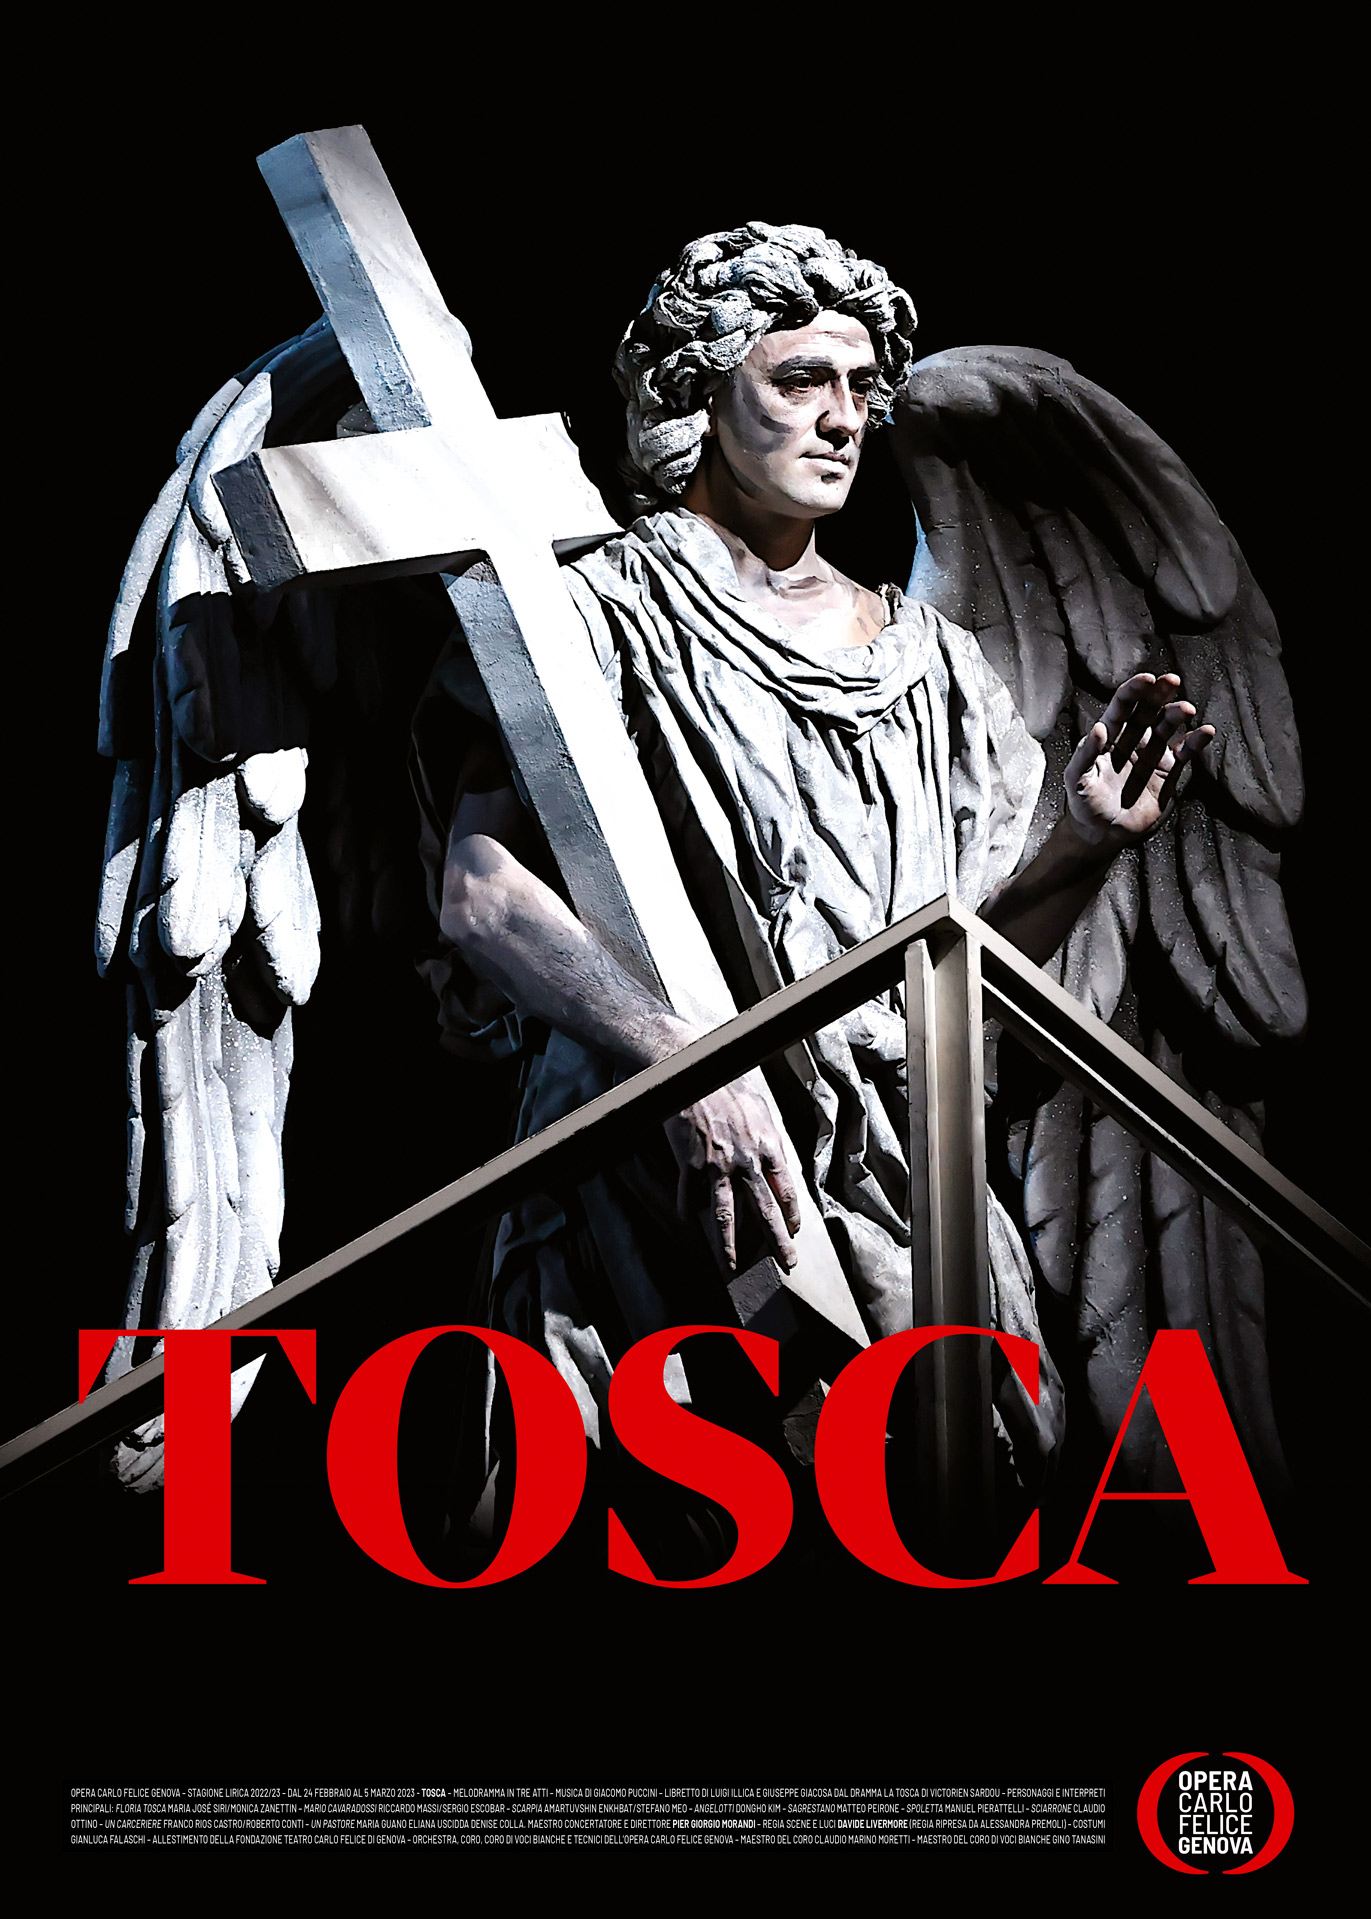 Opera Carlo Felice Tosca Manifesto4 Rossetti Brand Design